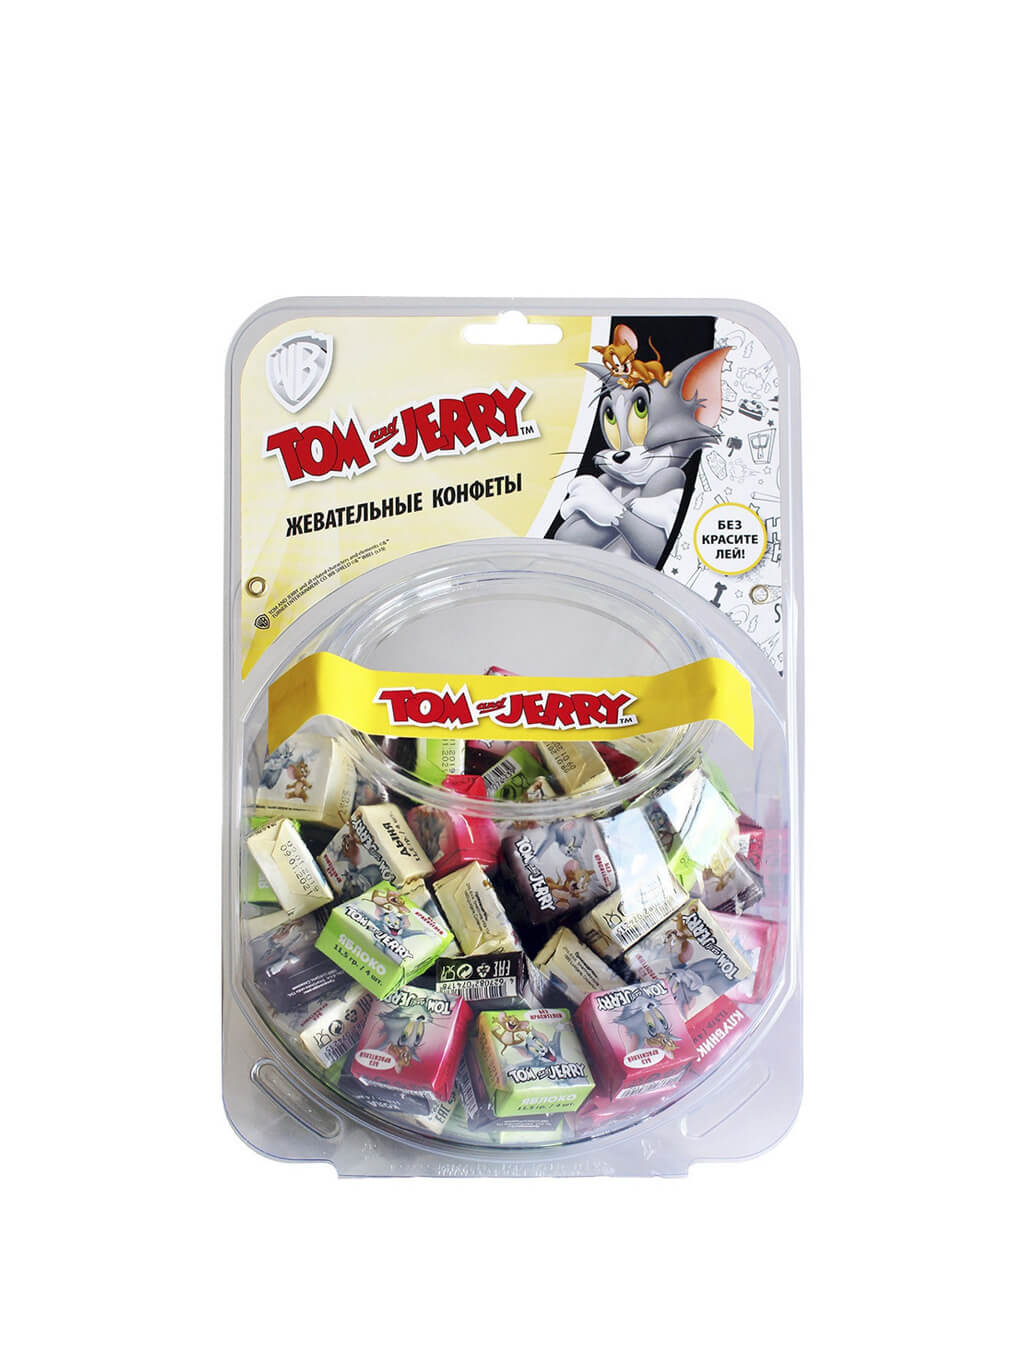 картинка Tom and Jerry конфеты жевательные Микс вкусов 6х1 (120*11,5г) сфера флоу-пак